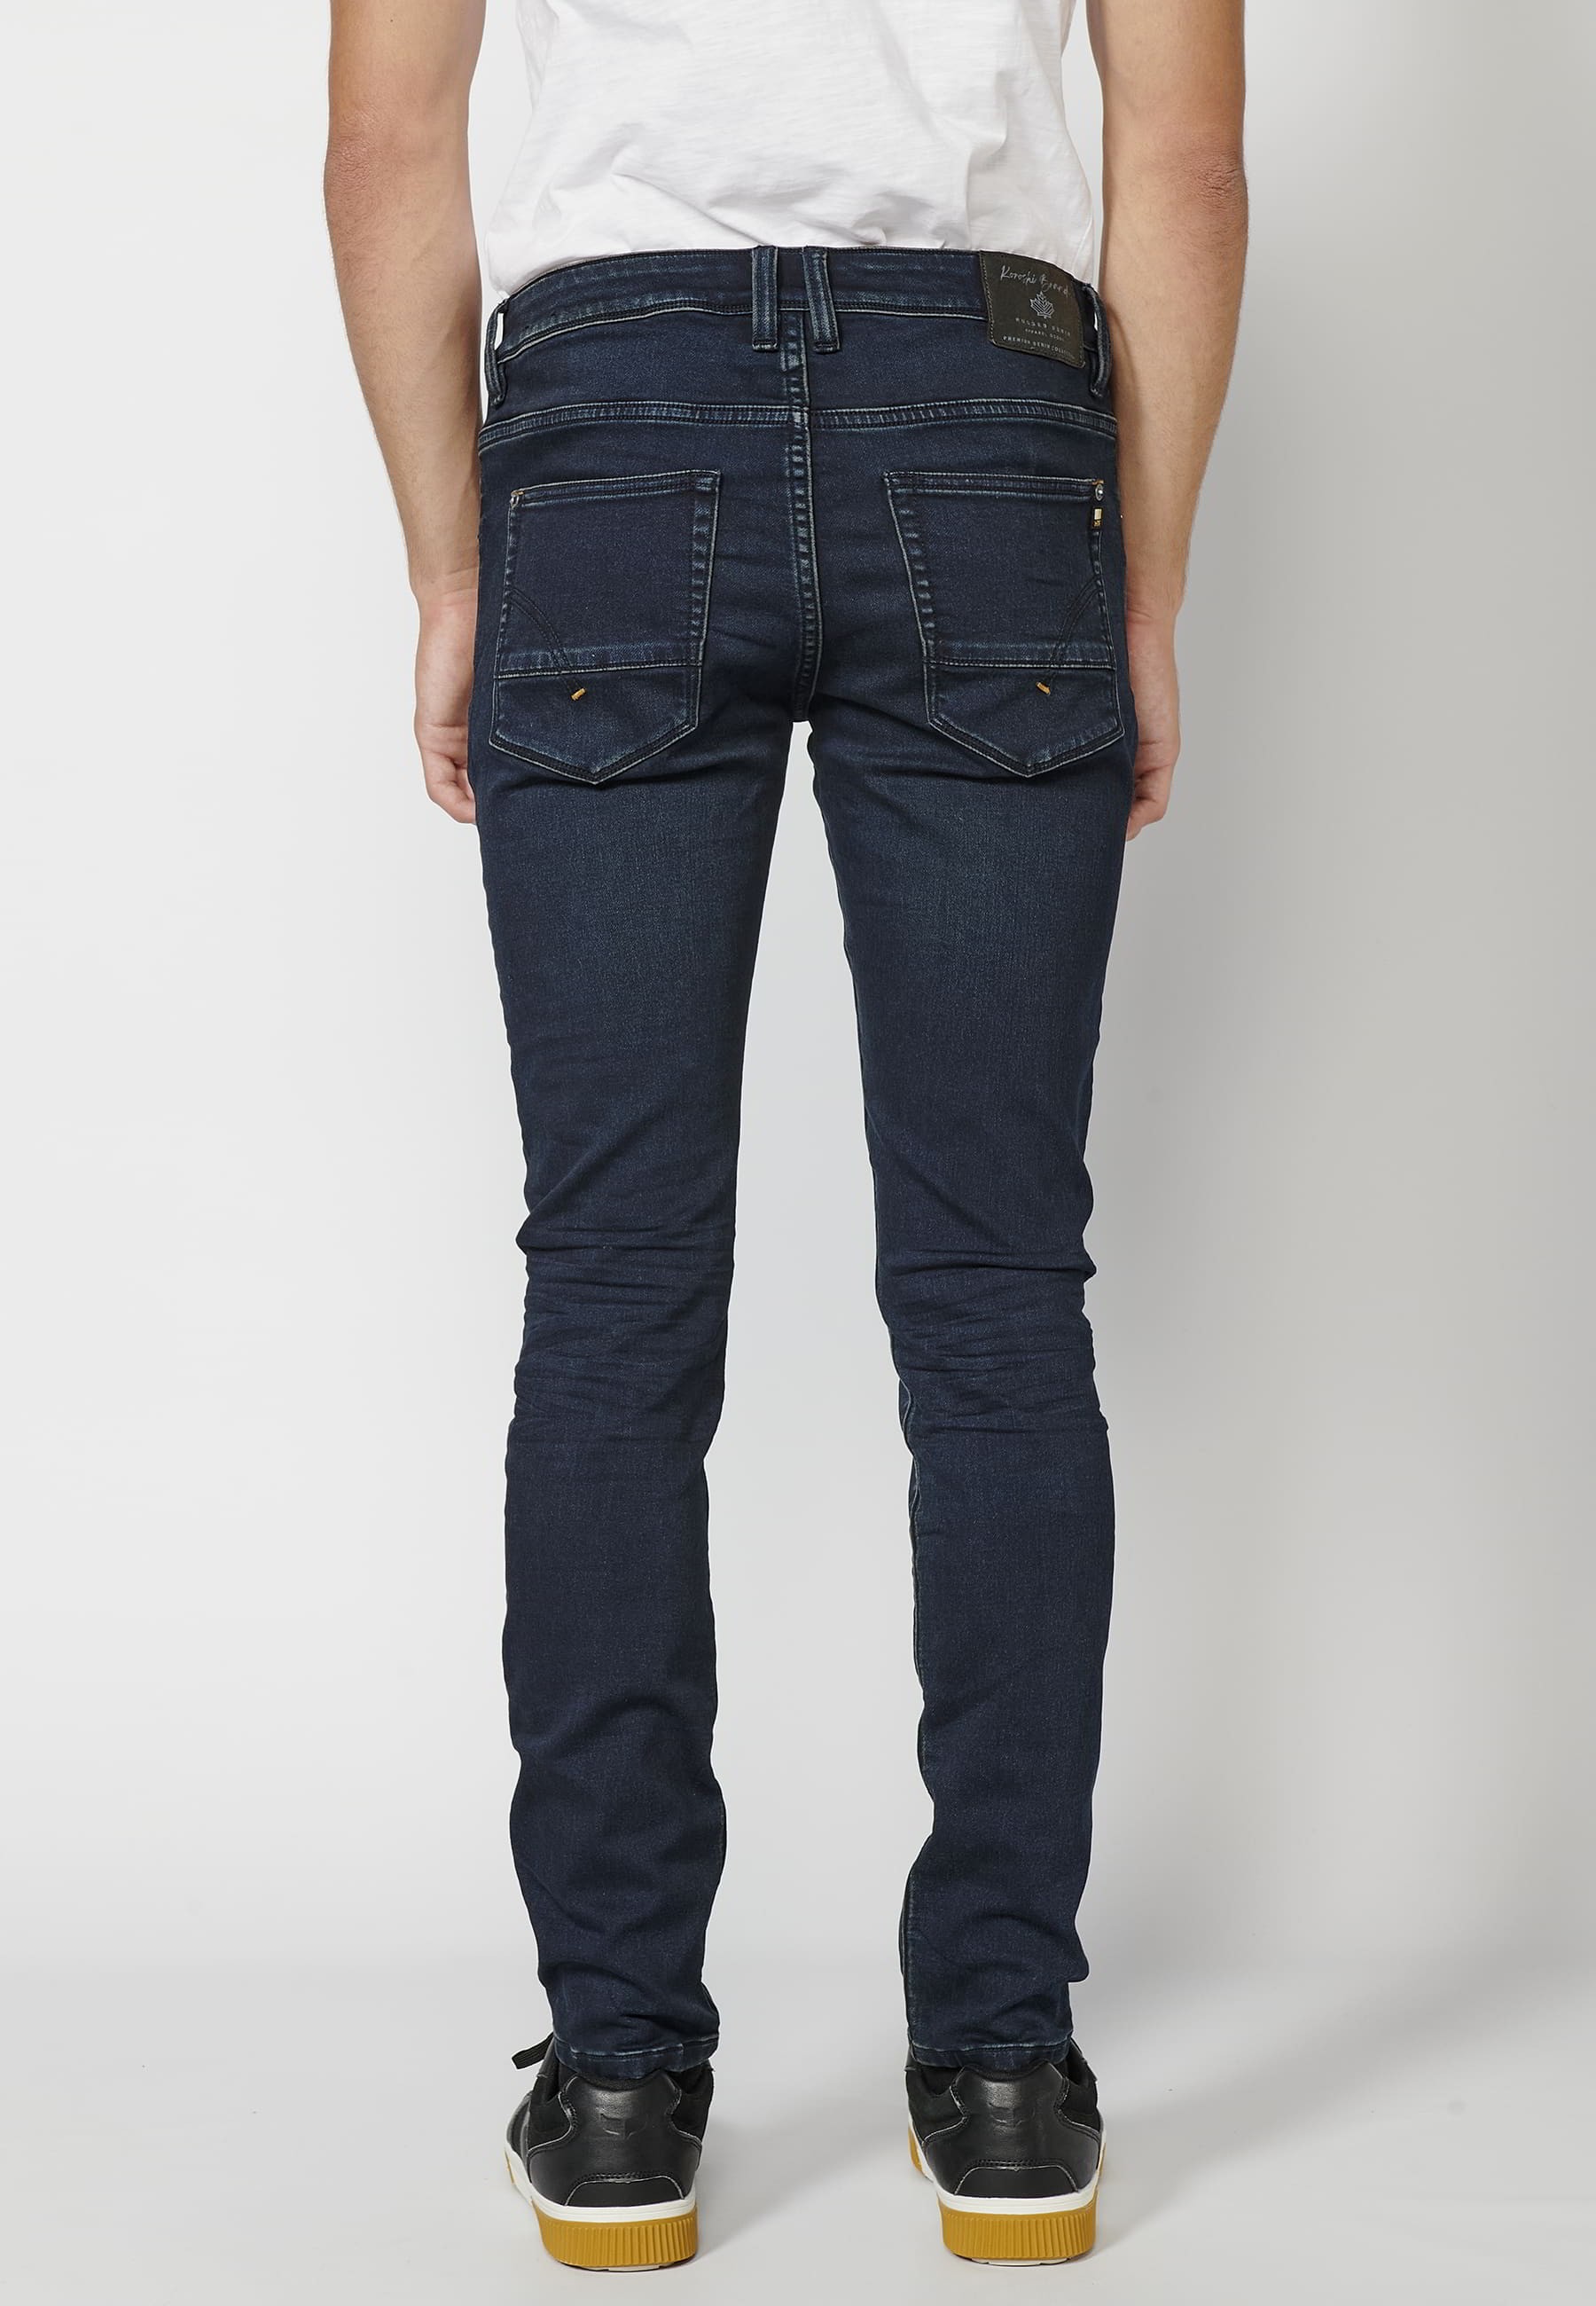 Pantalon Jean long coupe slim, couleur Bleu Foncé pour Homme 3